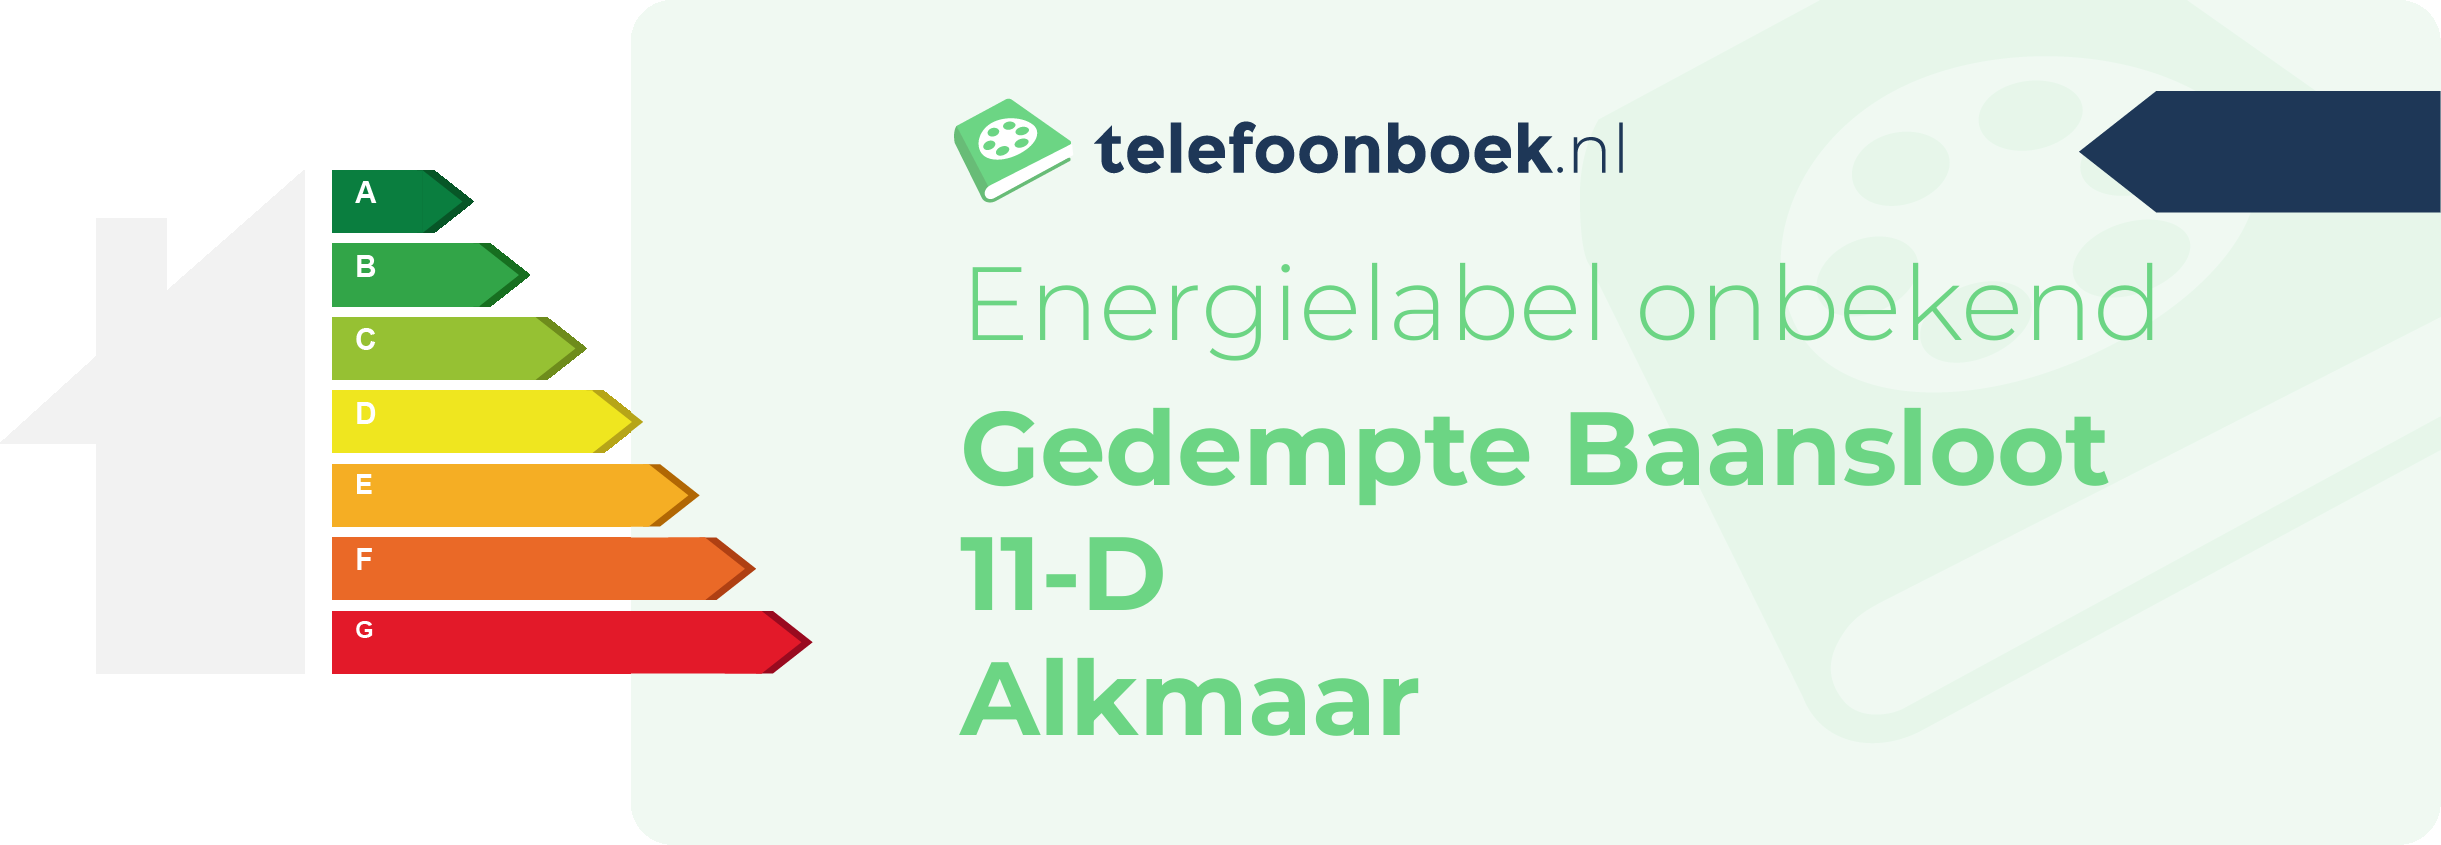 Energielabel Gedempte Baansloot 11-D Alkmaar